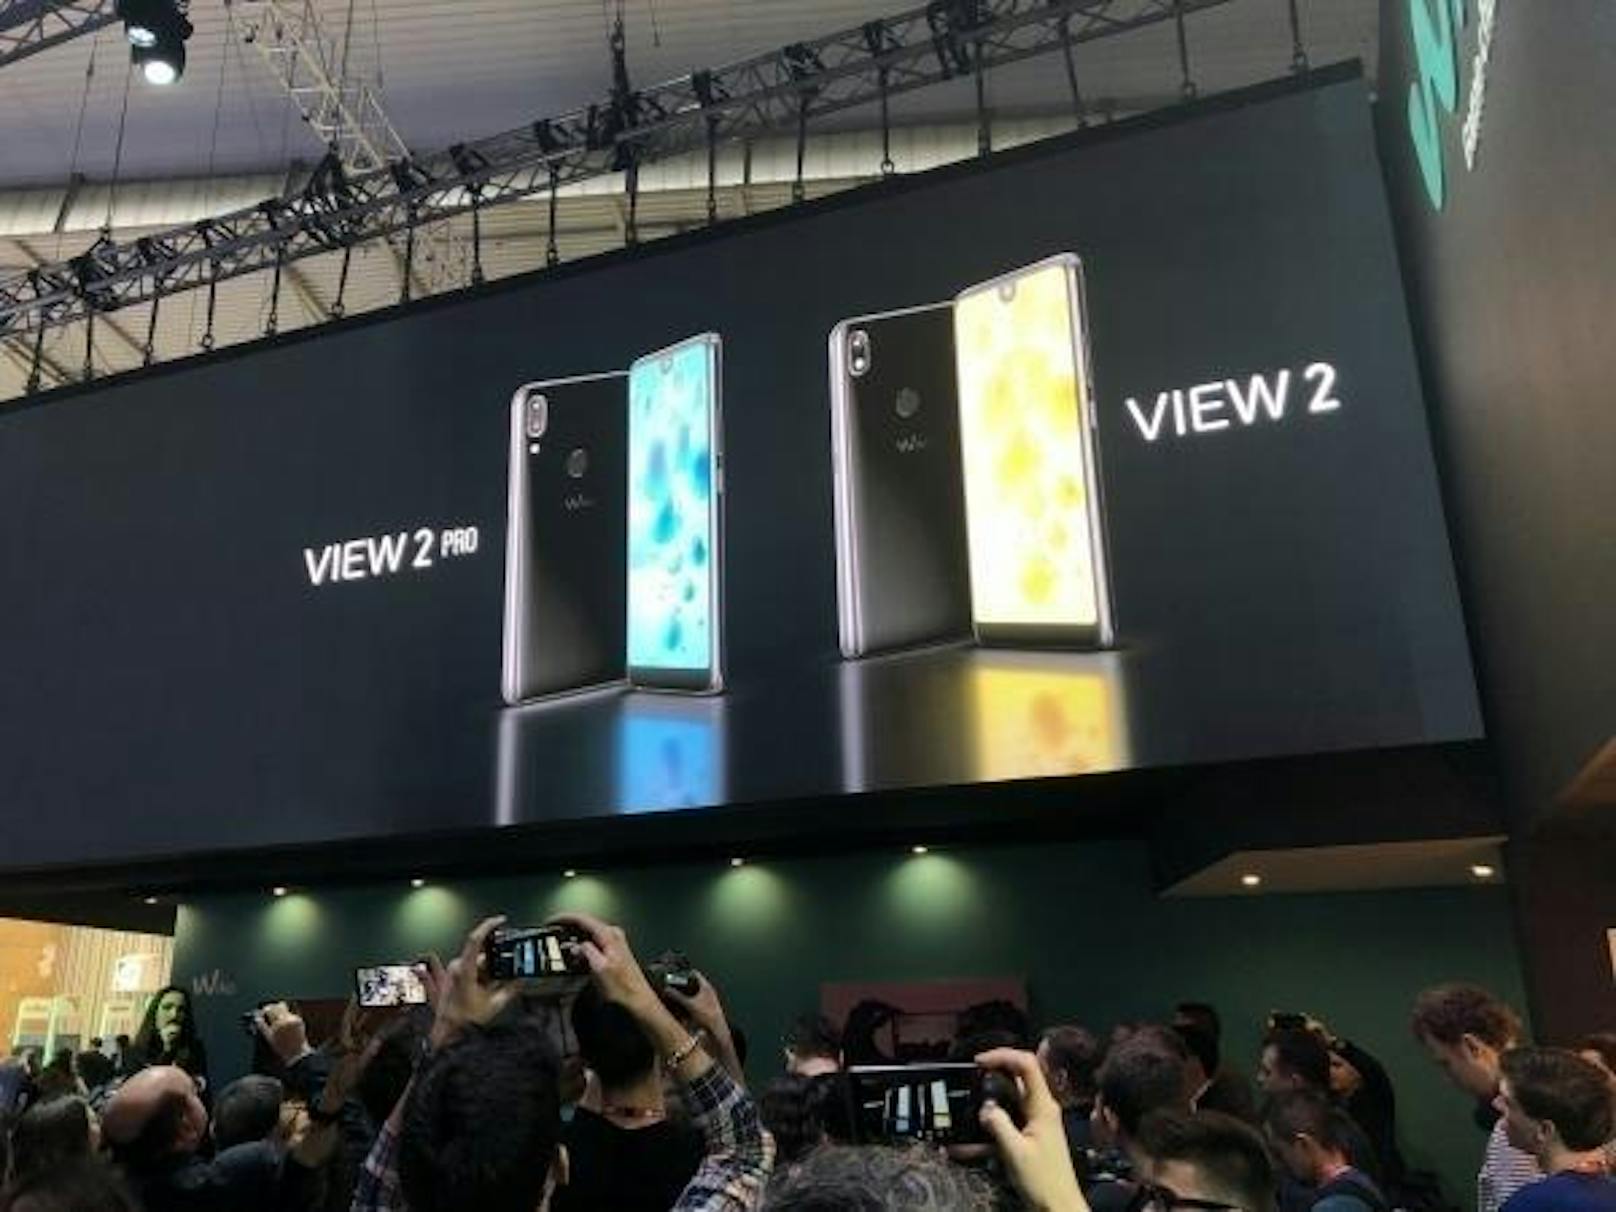 Am Mobile World Congress in Barcelona zeigte Wiko erstmals die neuen Modelle View 2 und View 2 Pro. Beide sind mit einem 6 Zoll großen HD+-Bildschirm im 19:9-Format ausgestattet.